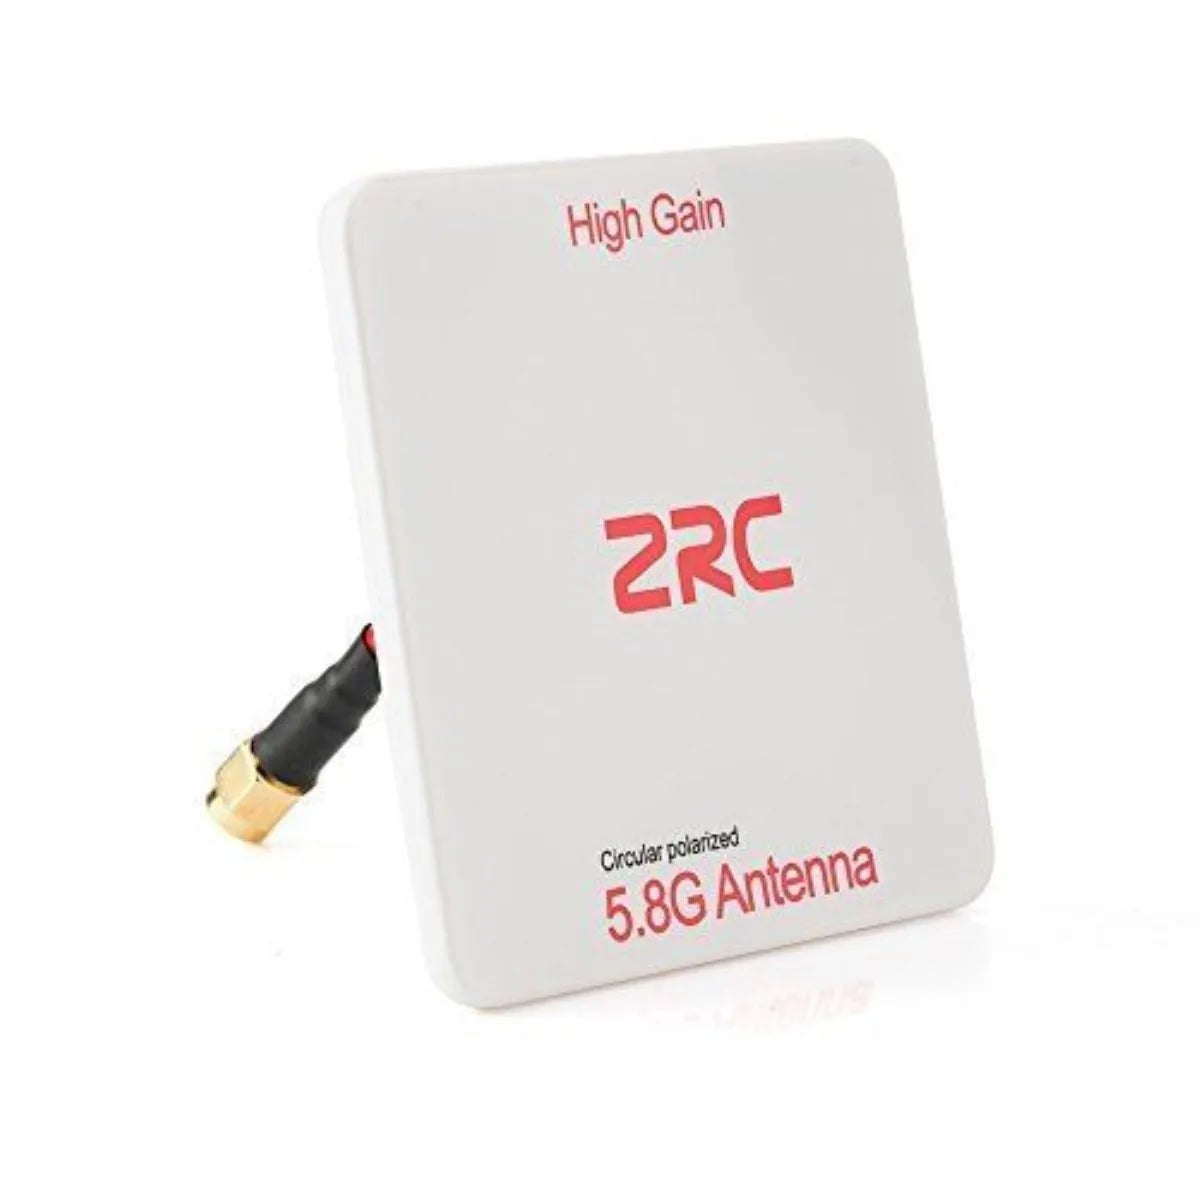 High Gain ZRC (pianzed CrvarF Antenna 5.